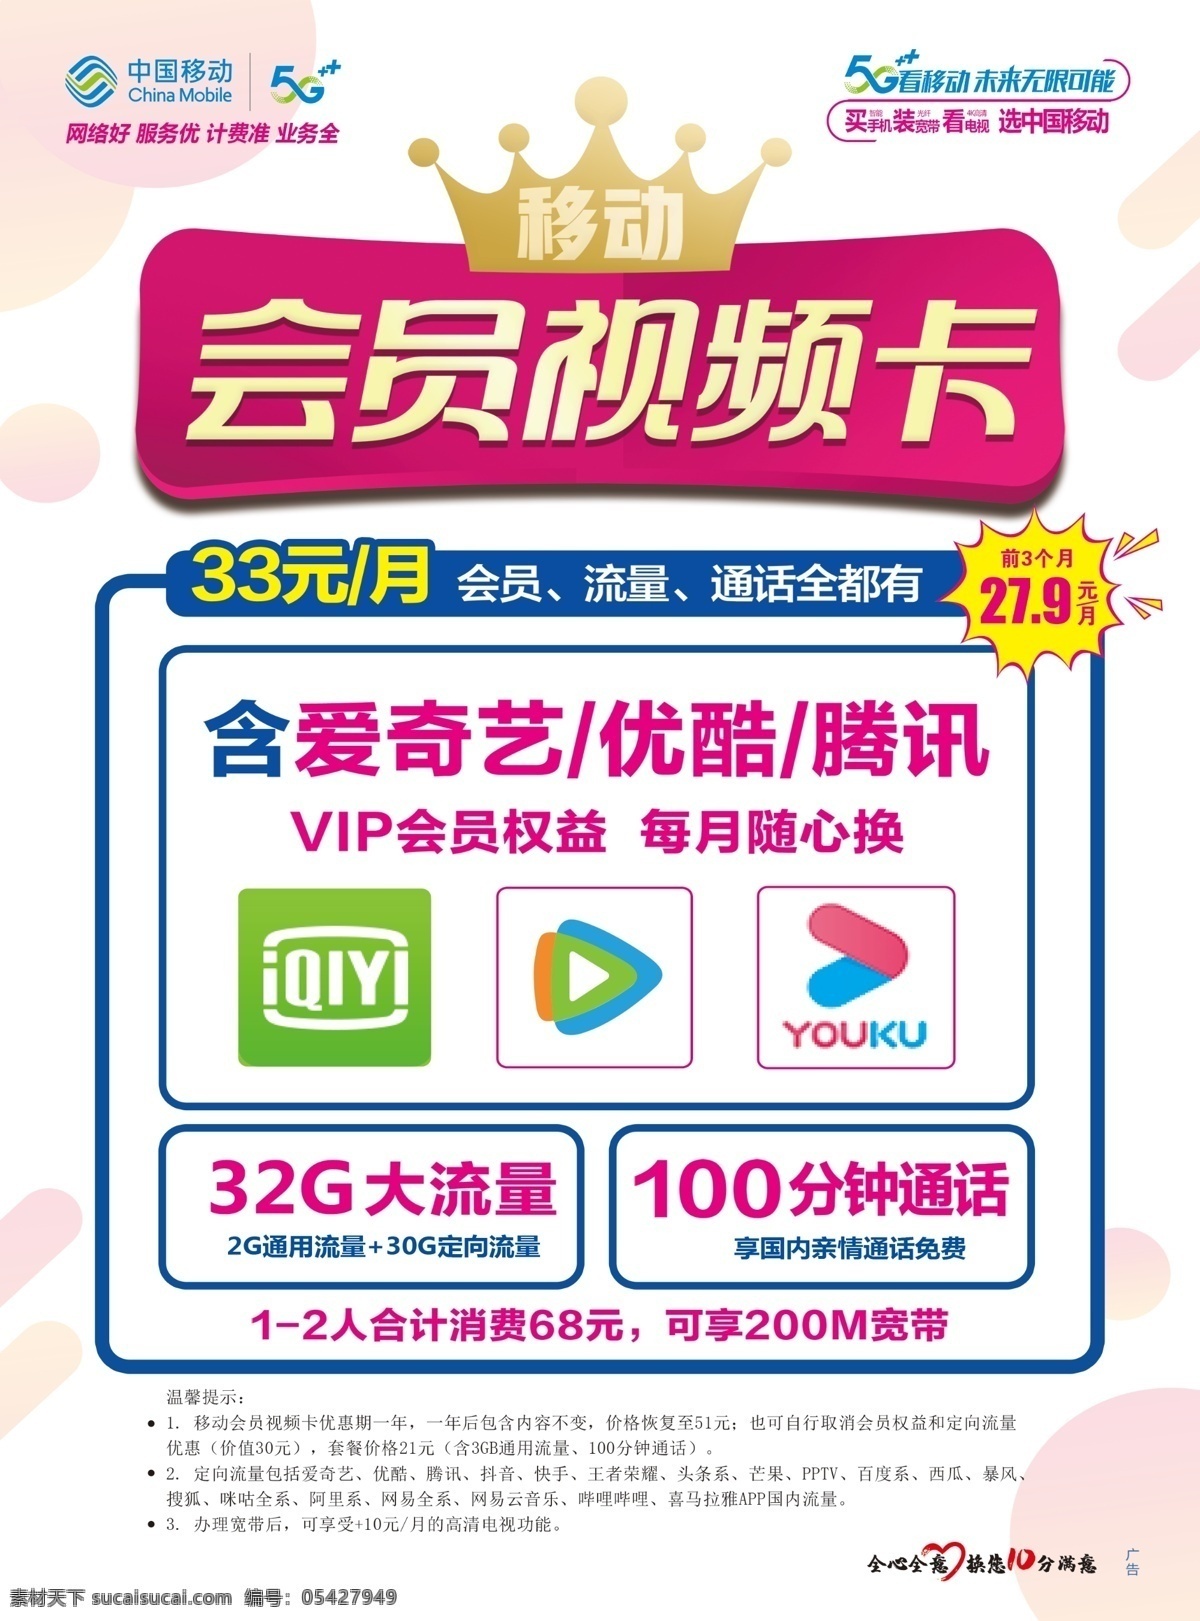 中国移动 会员 视频卡 业务 单 页 移动业务 移动套餐 视频 中国移动业务 套餐 dm宣传单